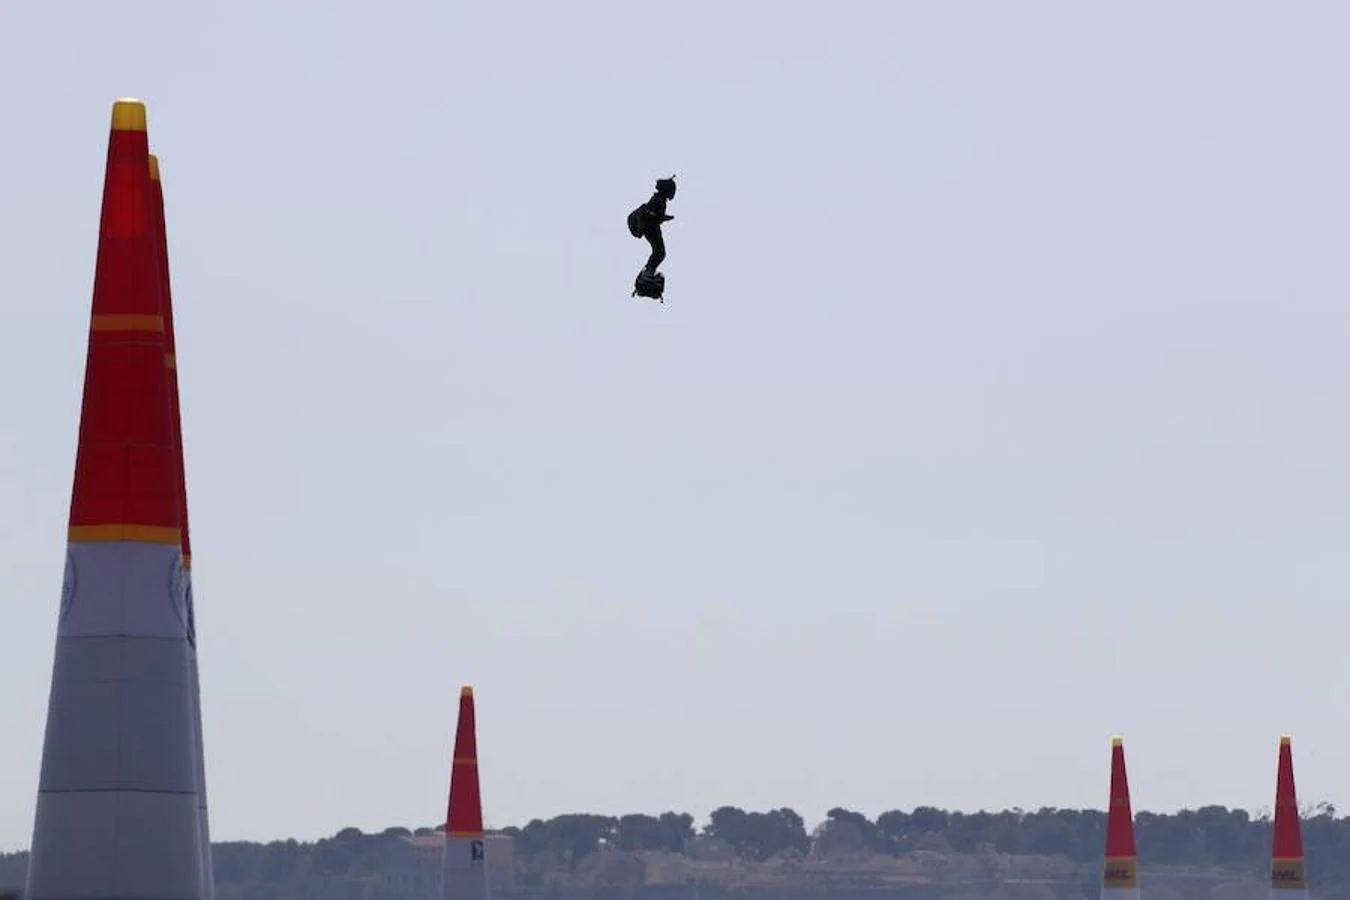 El cielo de la localidad francesa ha sido el elegido por la marca Red Bull para acoger la competición mundial de acrobacias aéreas 